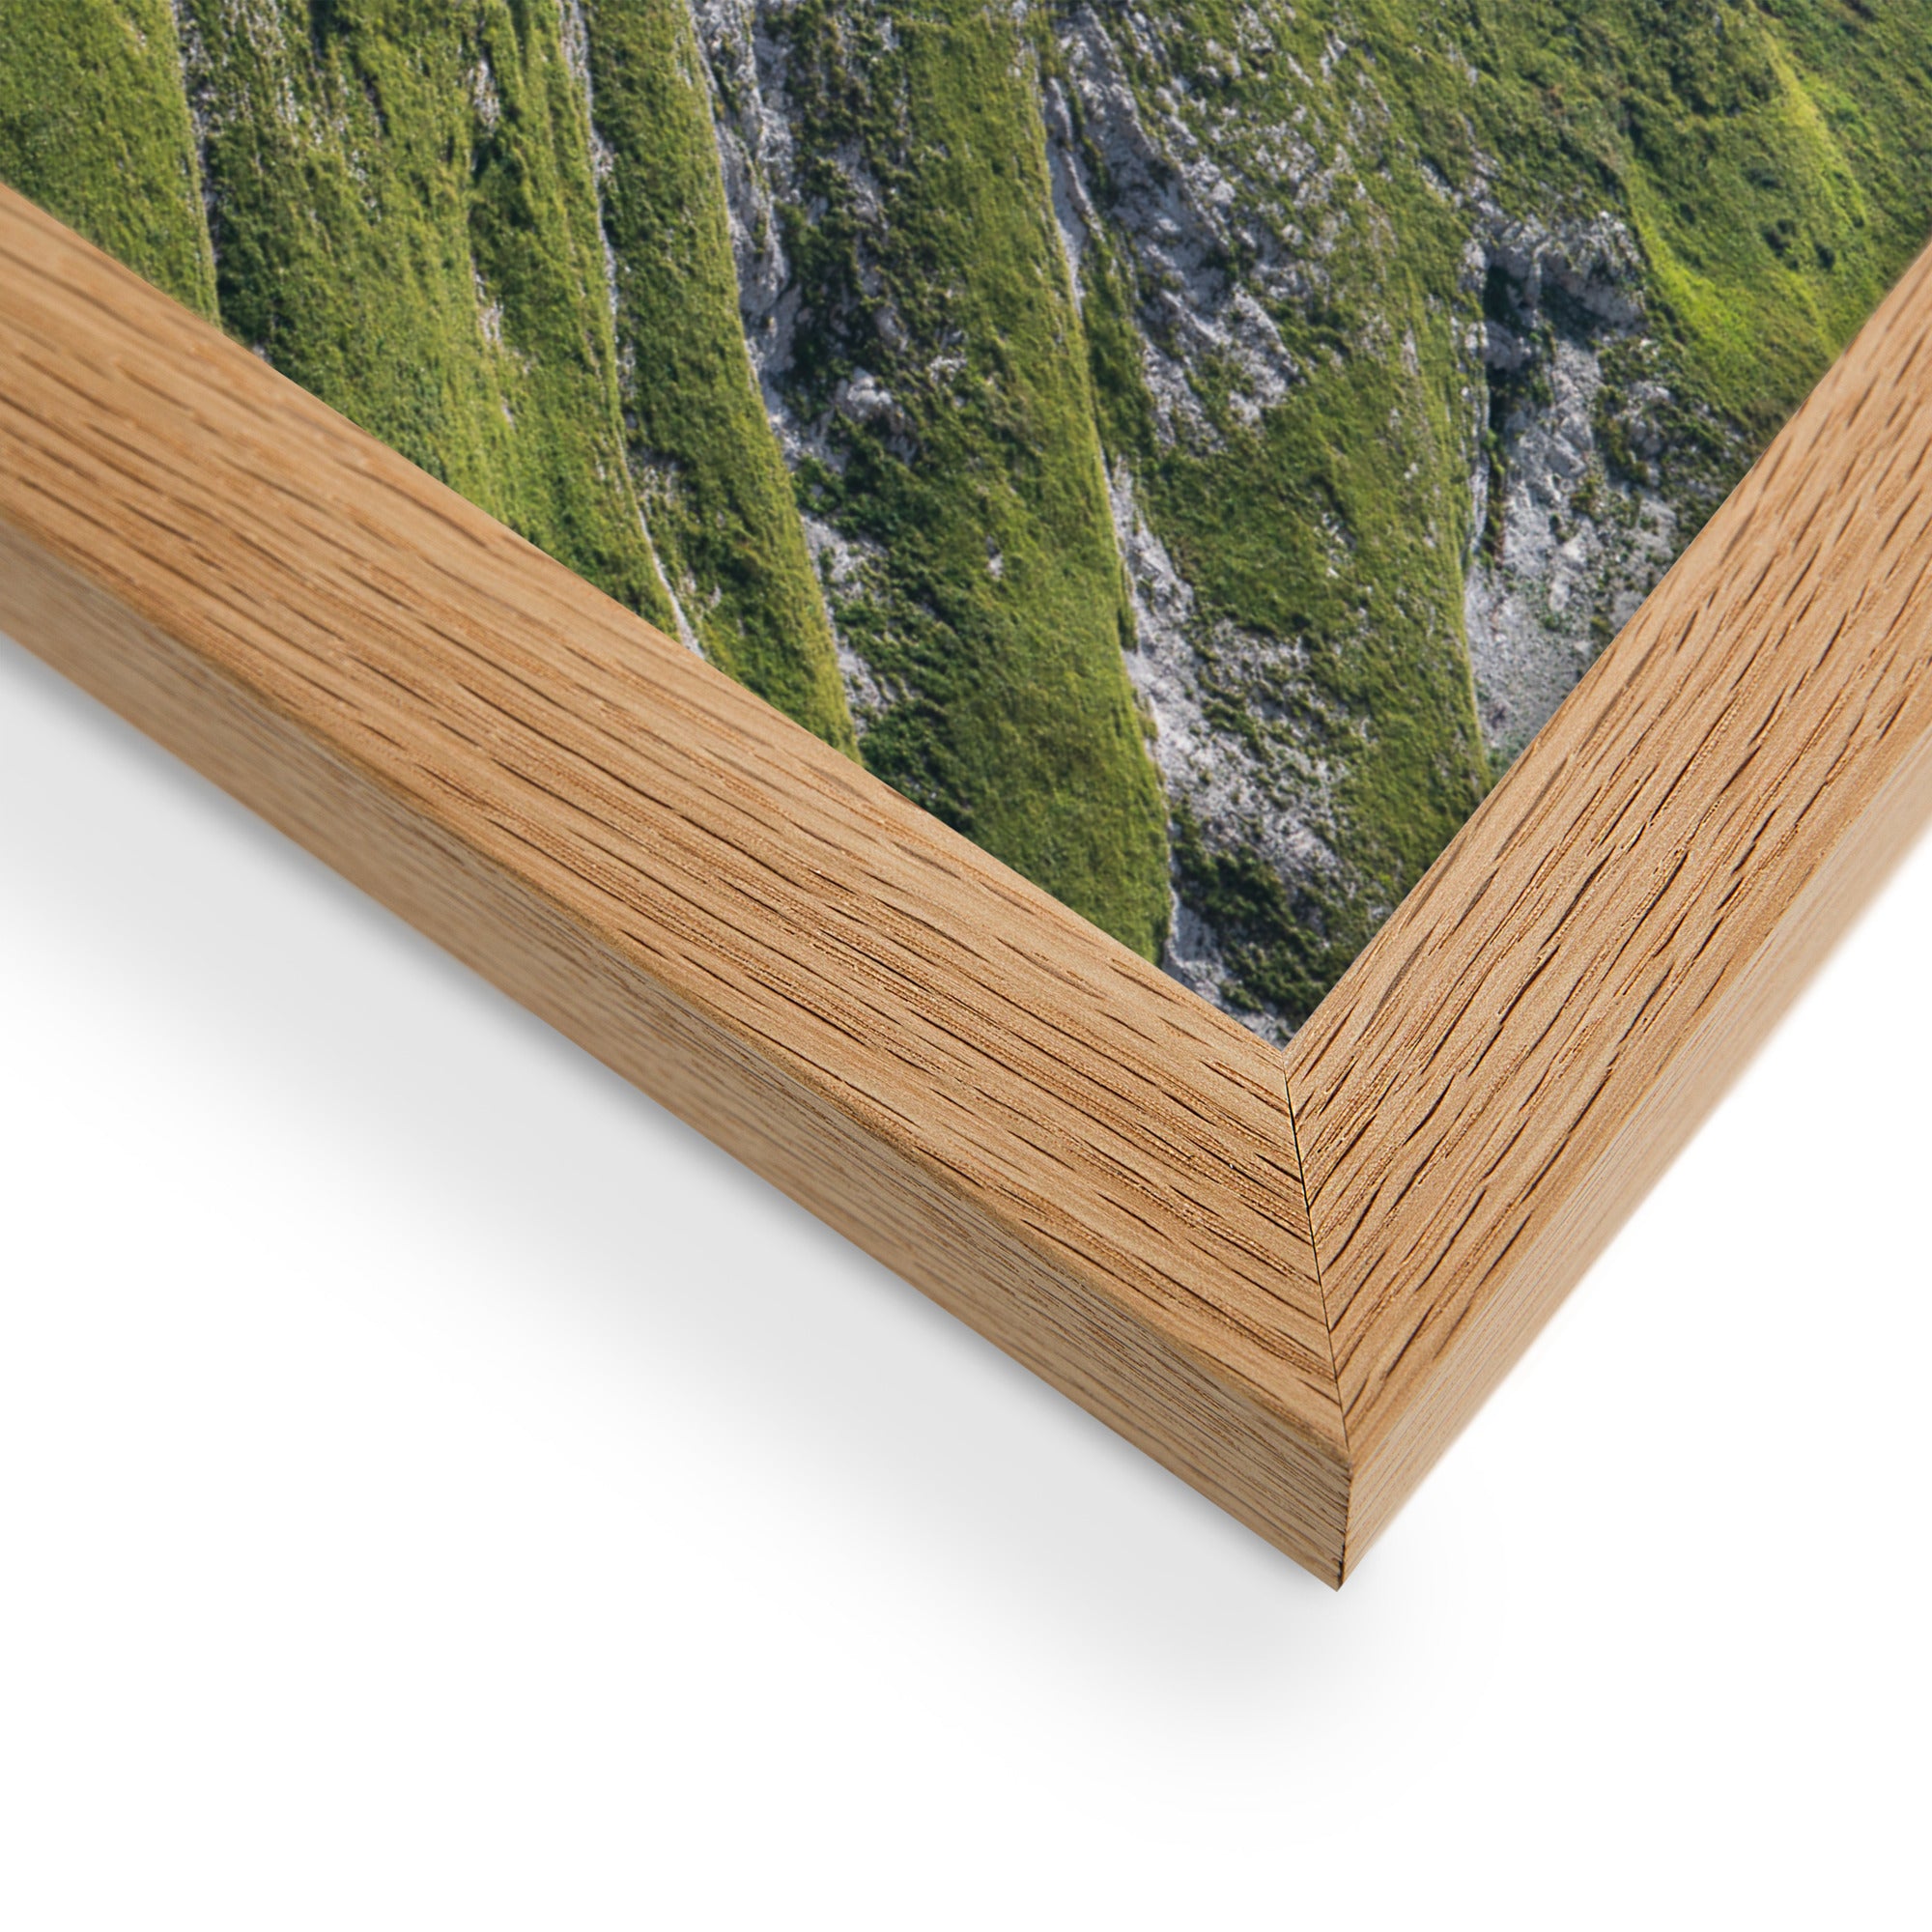 Vue panoramique du 'Mamelon Vert' avec sa végétation luxuriante et montagneuse, encadrée en bois de chêne.